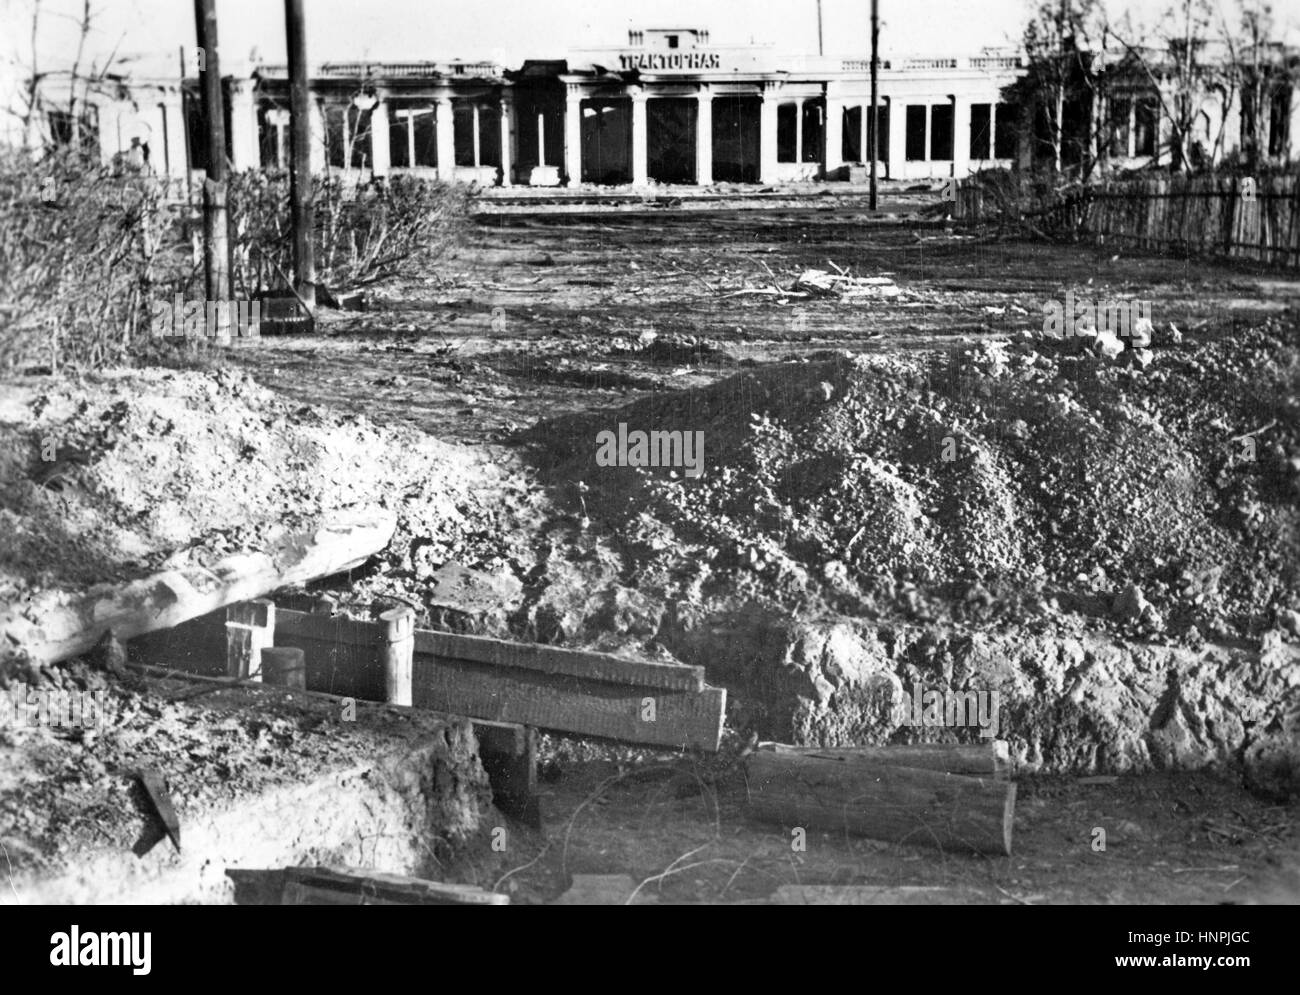 La propagande nazie, l'image montre un bunker face au "zerzhinsky' assiégé amèrement le tracteur et l'usine de réservoir dans le nord de Stalingrad (aujourd'hui Volgograd). Prise en novembre 1942 après qu'il a été capturé par la Wehrmacht allemande. Un état nazi reporter a écrit sur l'inverse de la photo sur 07.11.1942, "l'usine de tracteurs détruit dans la forteresse de Stalingrad. Une lutte acharnée a été menée au cours de cette usine. Les Bolcheviks avaient entouré le grand parc avec bunkers et étangs qui s'est 10 mètres dans le sol afin d'empêcher les troupes allemandes de pénétrer." Photo : Berline Banque D'Images